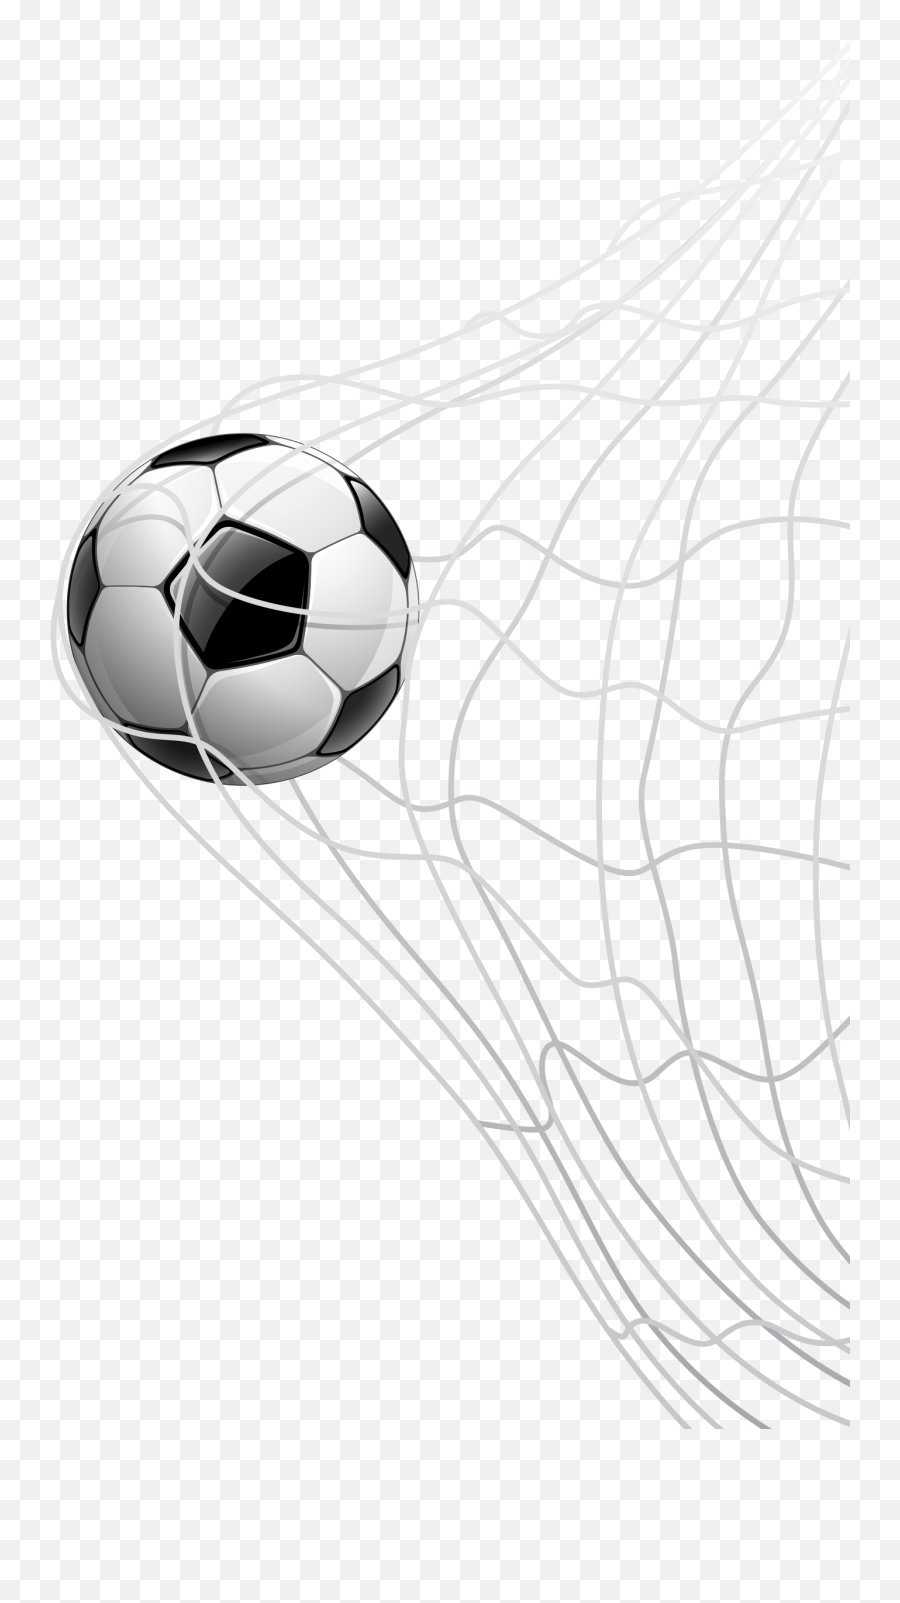 Goal Drawing Soccer Net Transparent - For Soccer Emoji,Soccer Goal Clipart